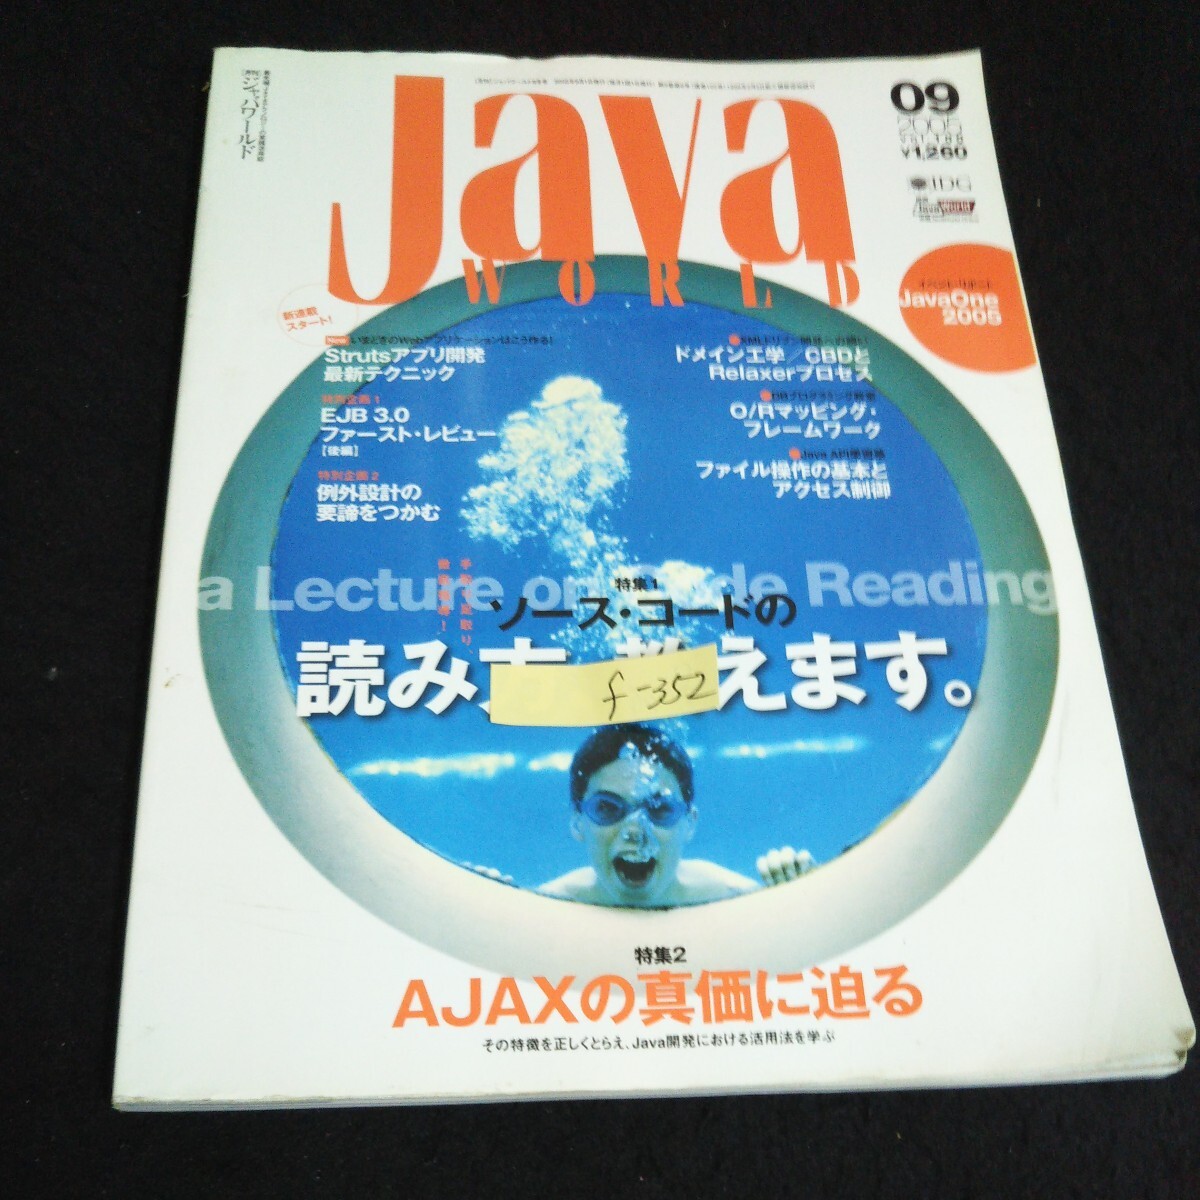 f-352 ежемесячный Java world 9 месяц номер соус * код. считывание person ... акционерное общество IDG Japan 2005 год выпуск *14